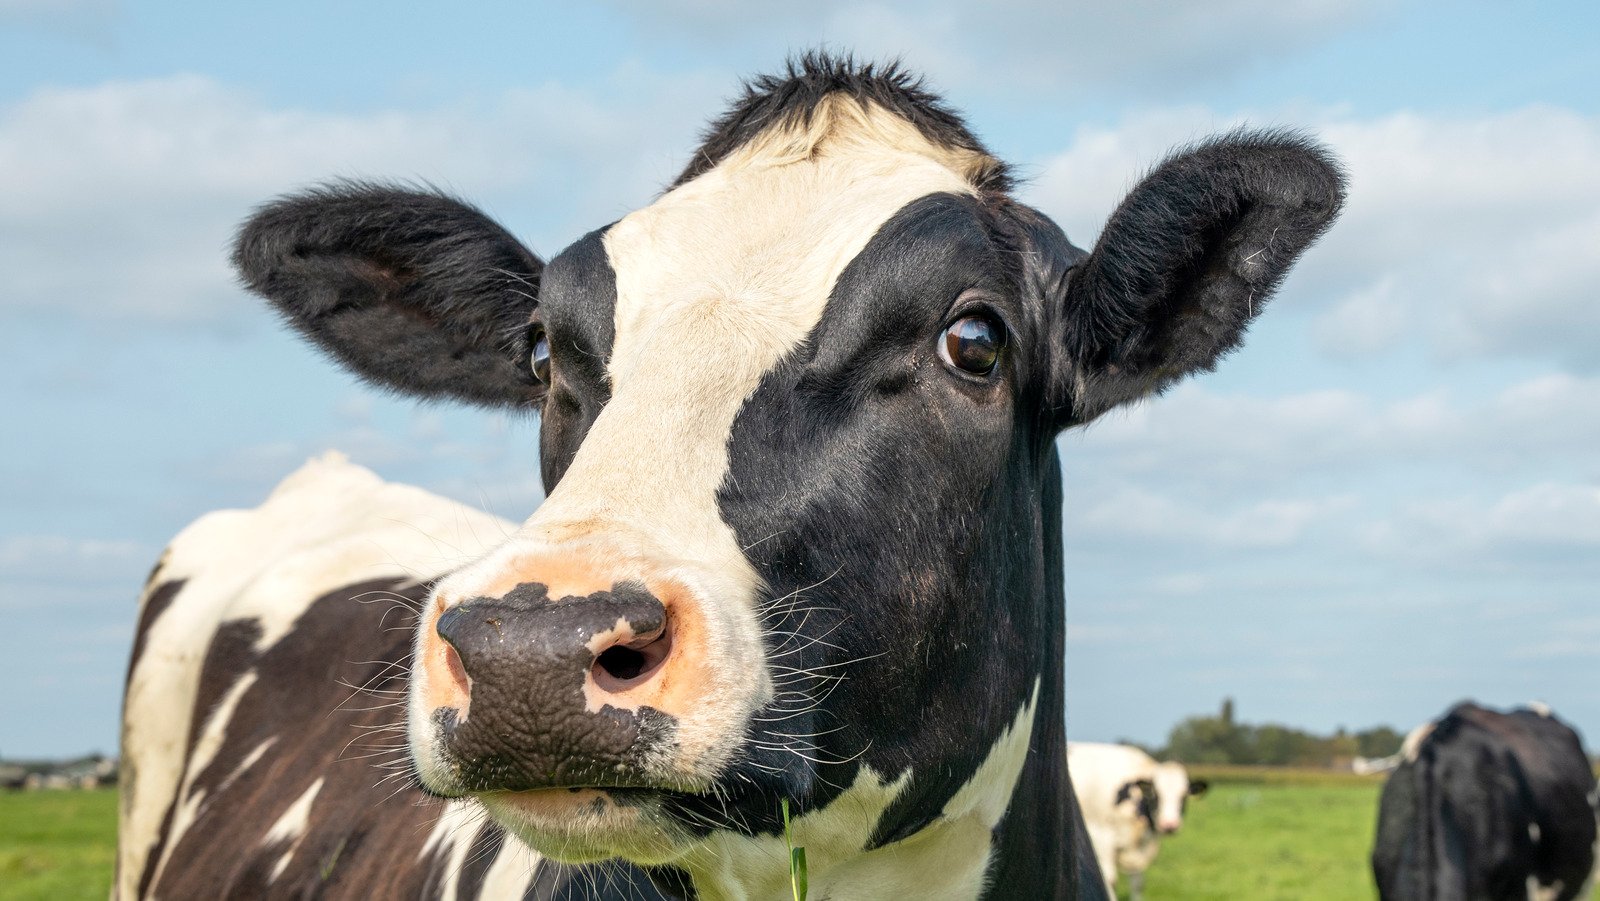 Queen Elizabeth II's Deep Affection For Cows